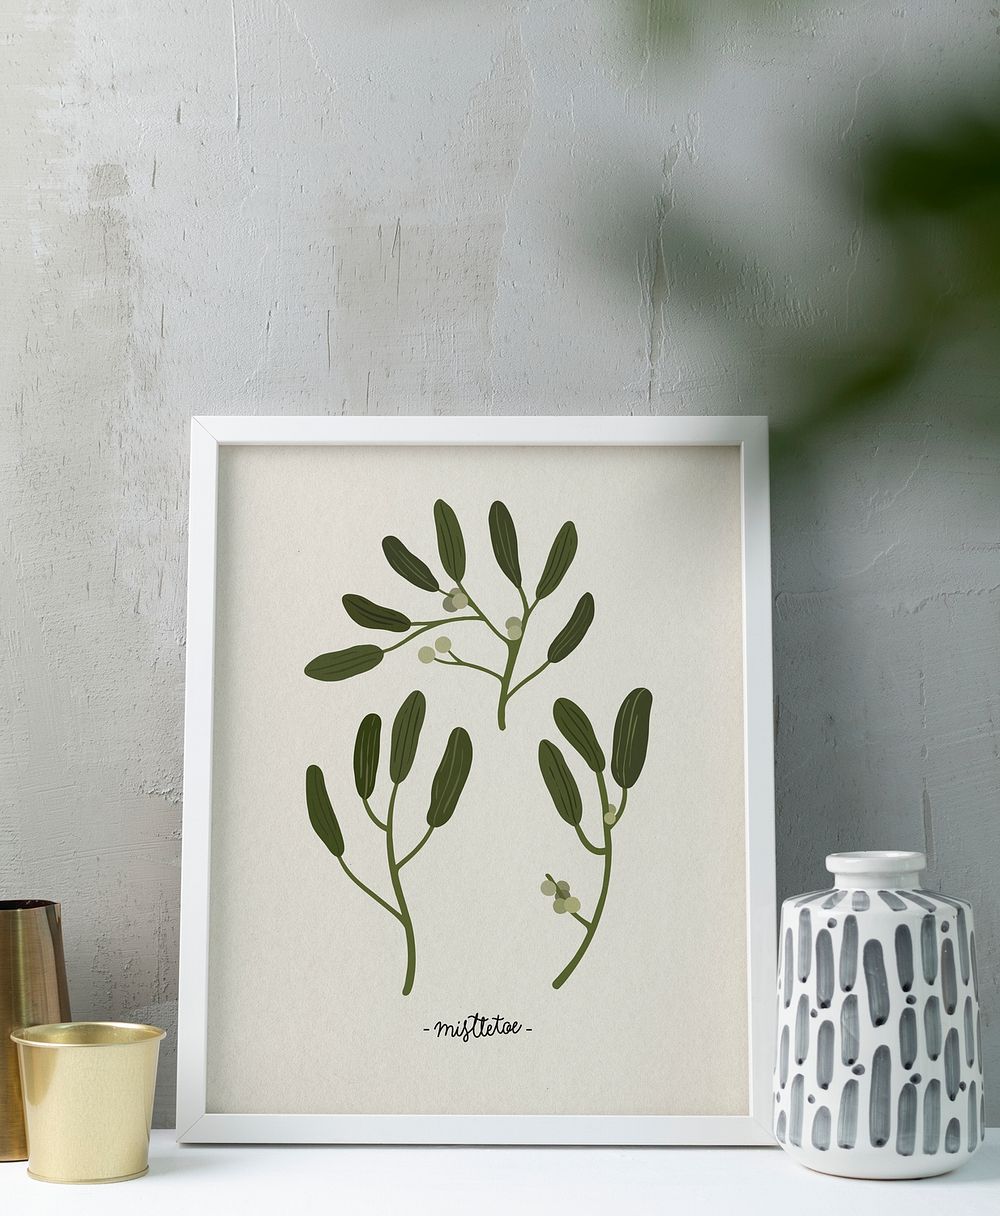 Frame psd mockup, simple home decor, botanical leaf illustration